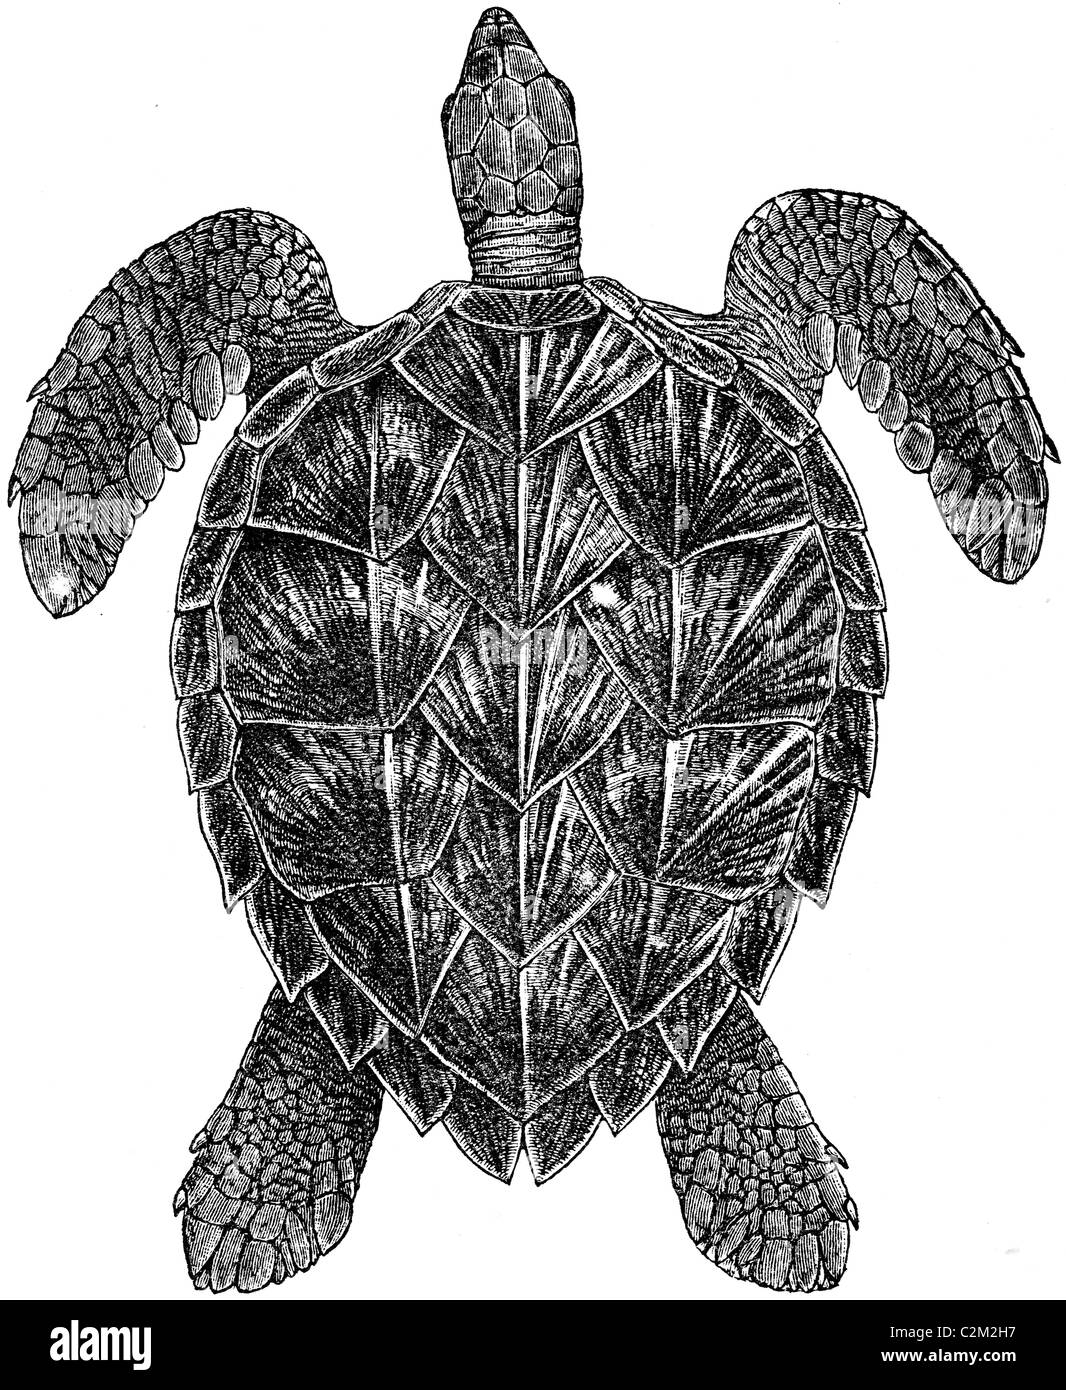 19ème siècle illustration de livre, prises à partir de la 9e édition (1875) de l'Encyclopédie Britannique, de la tortue imbriquée Banque D'Images